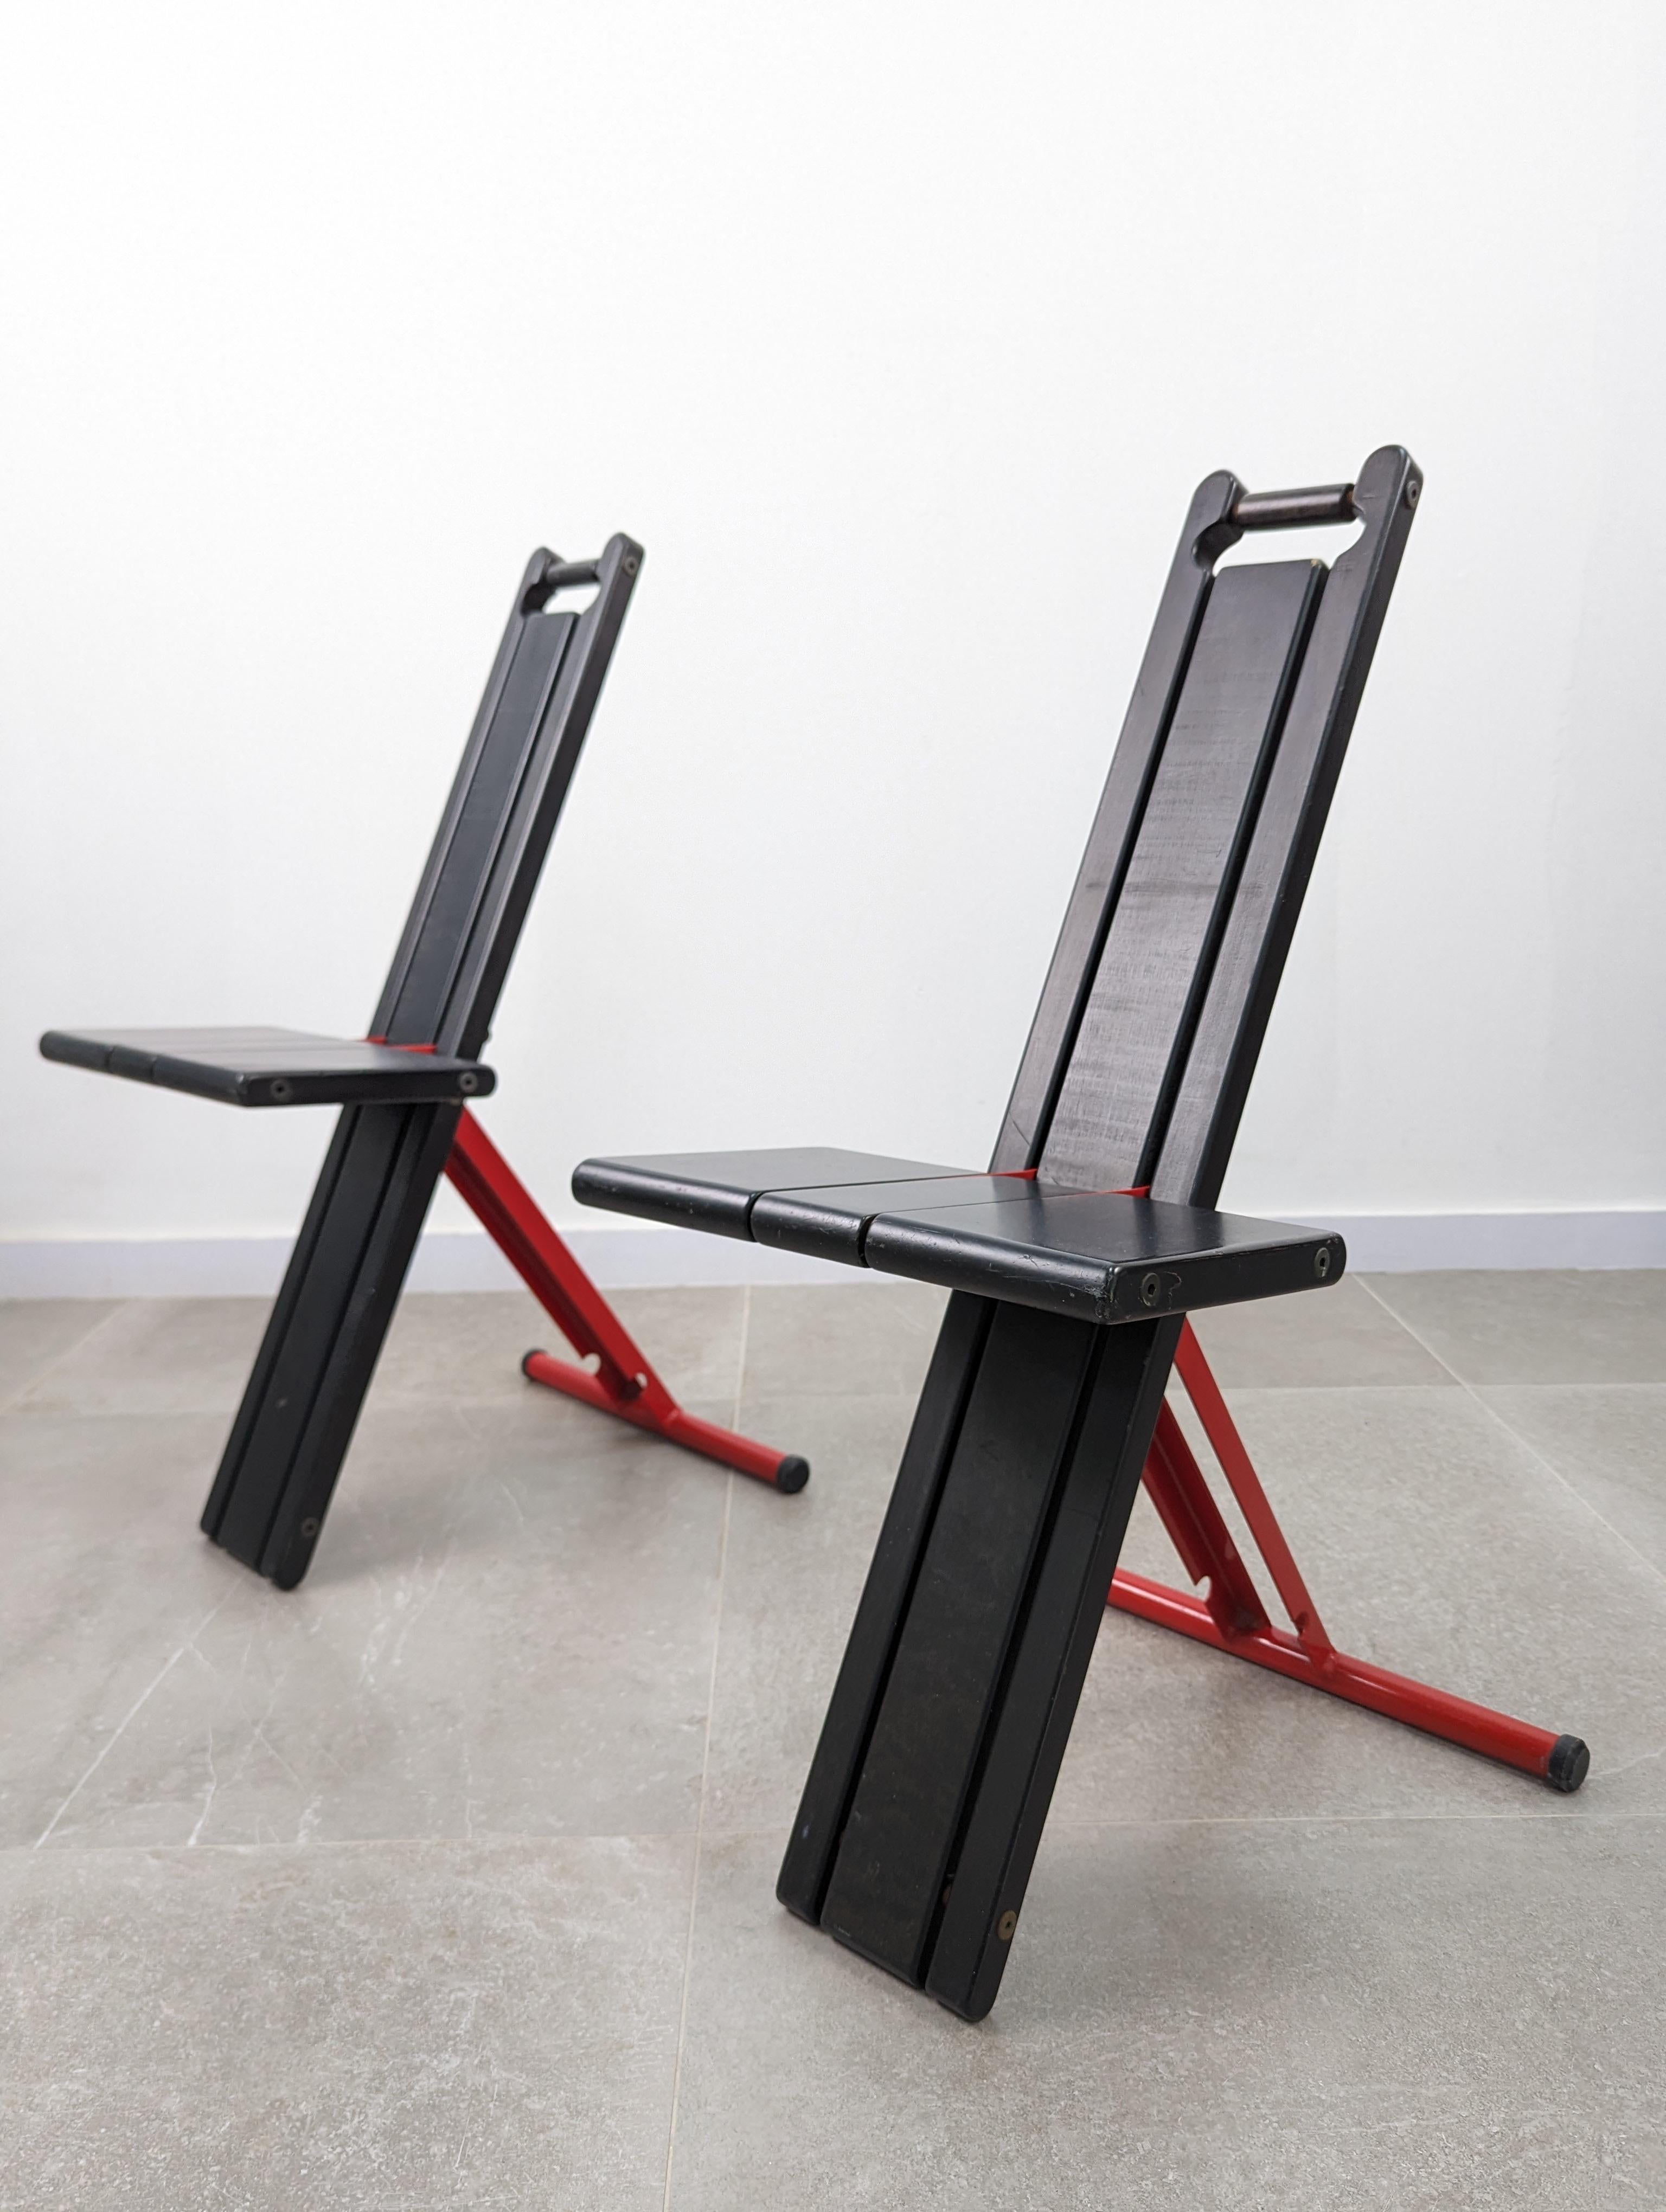 Paire de chaises pliantes portables conçues en 1982 par Torstein Nilsen initialement pour Kalvatn Møbelindustri et produites en 1984 par Møremøbler AS, en hêtre laqué noir, avec des éléments de support en fer laqué rouge. En outre, cette conception